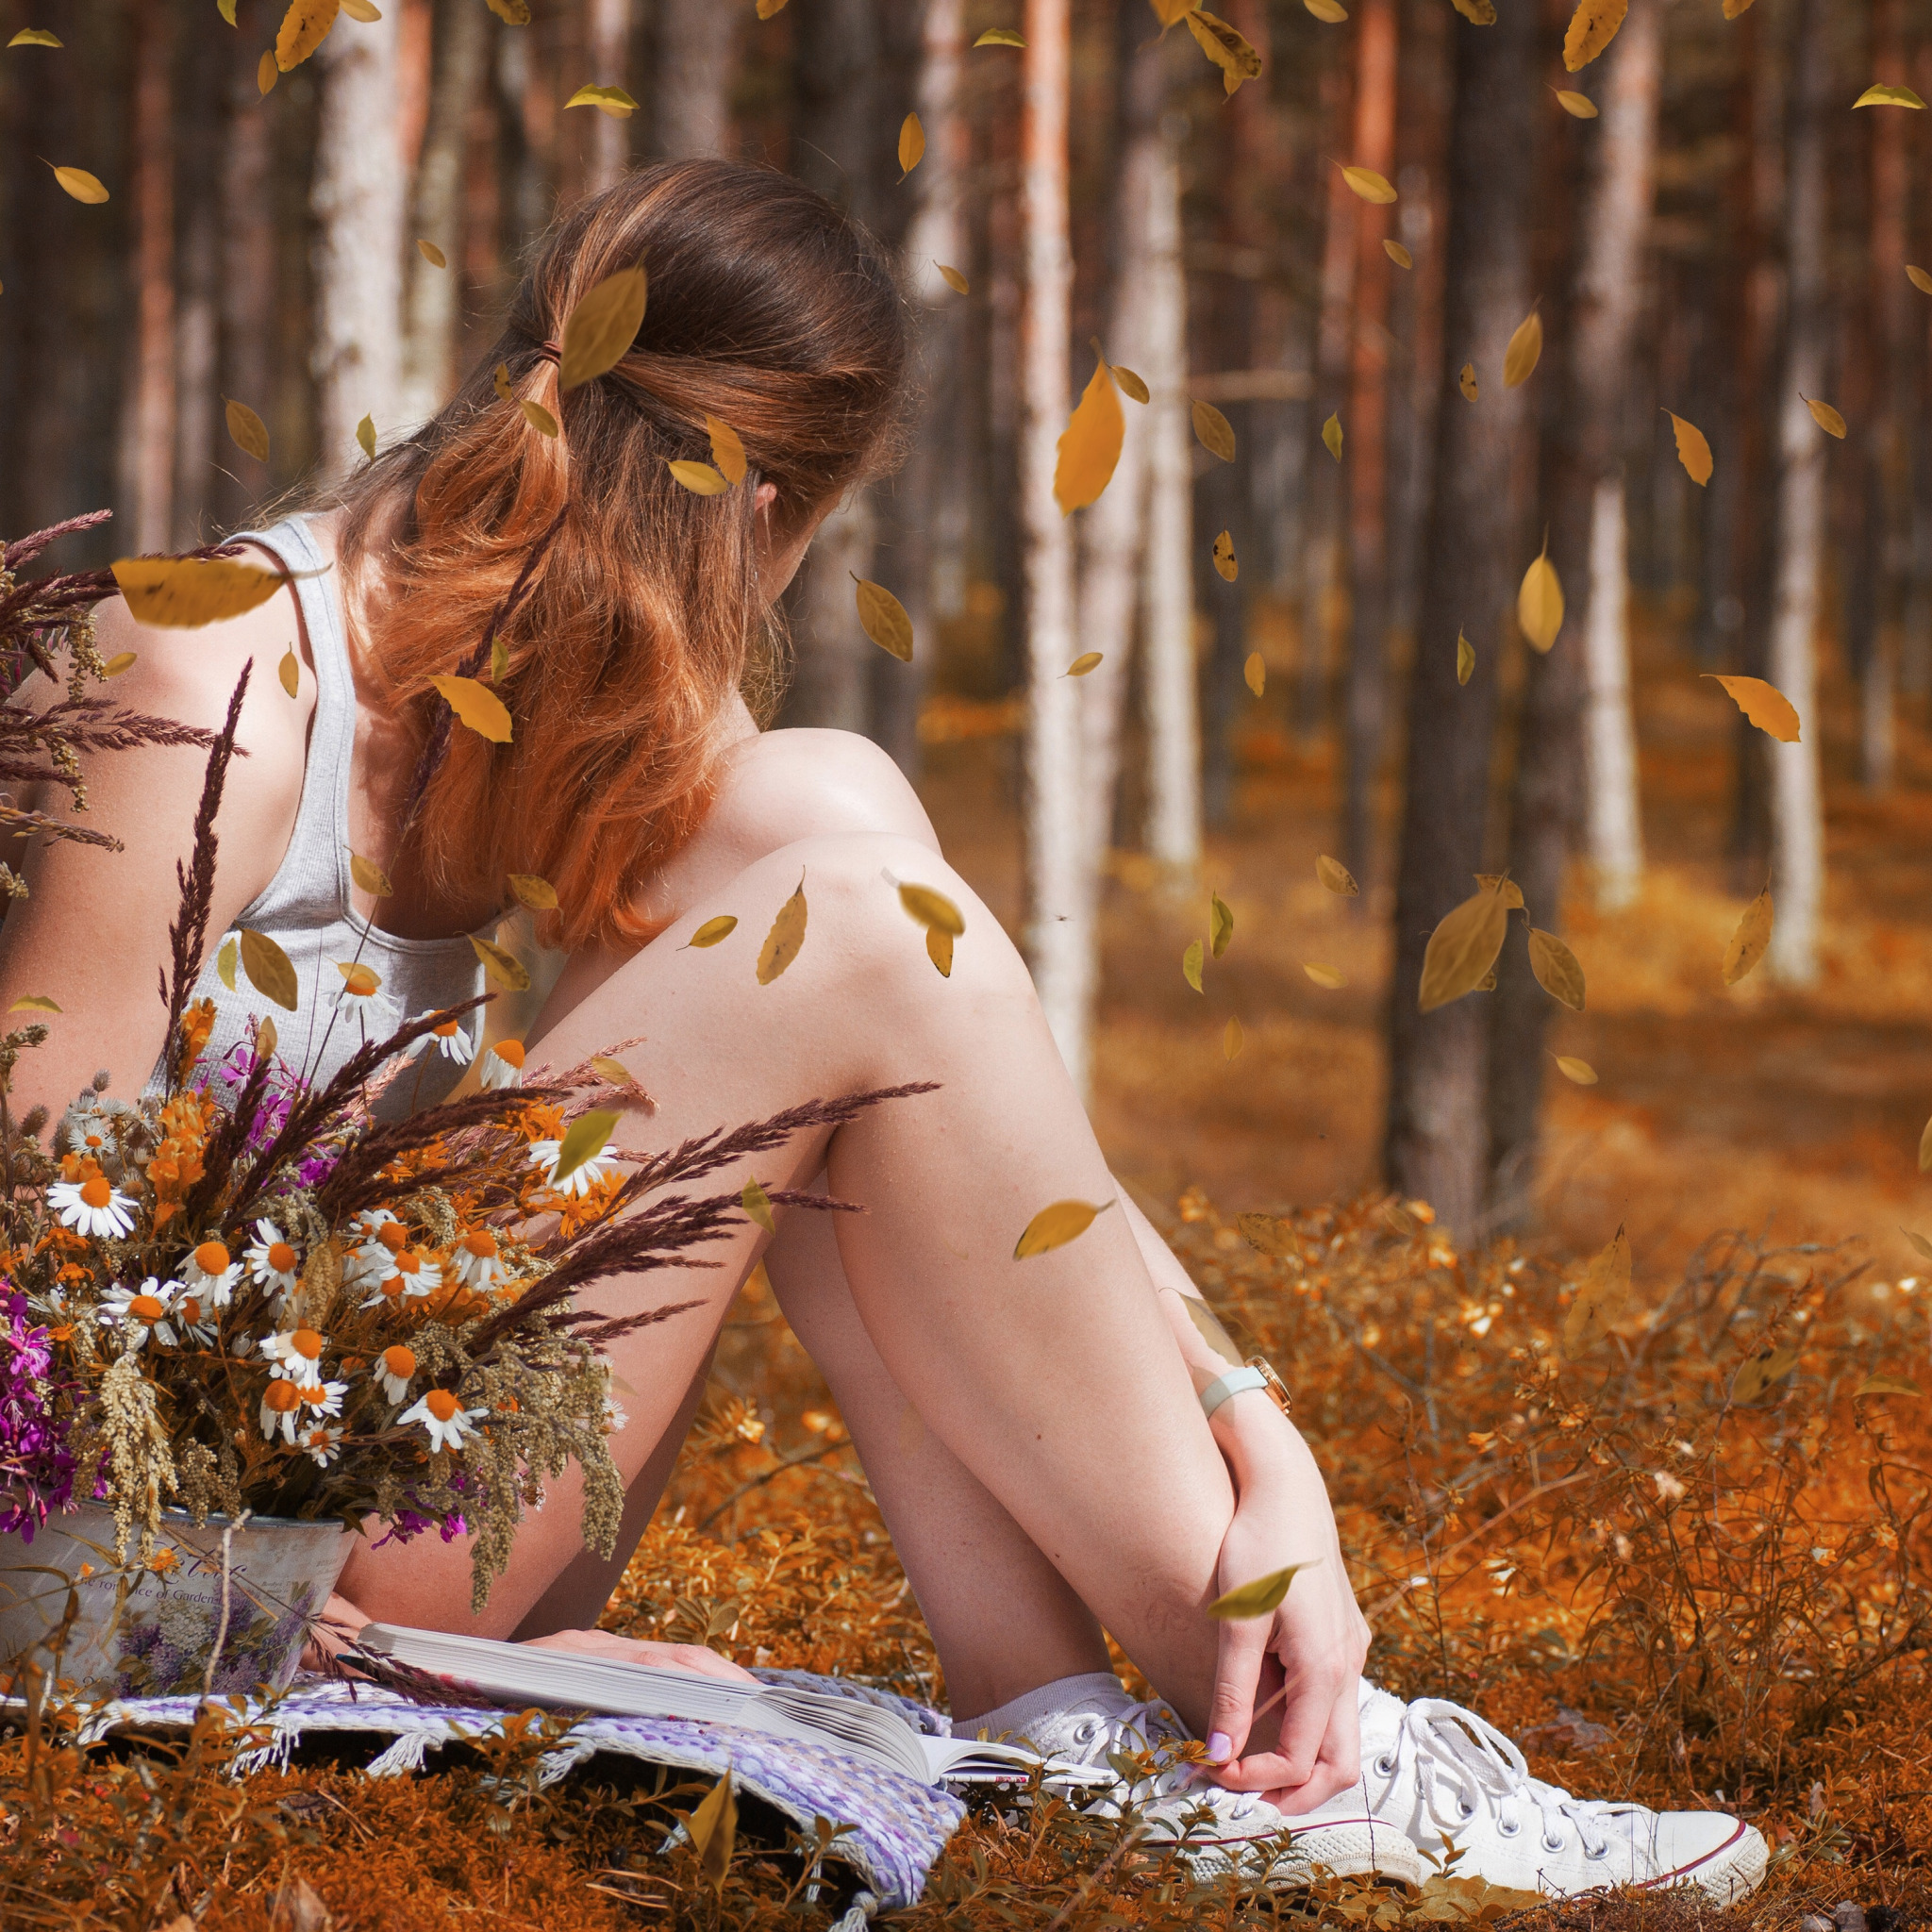 Фото девушки оголившей сиськи в лесу